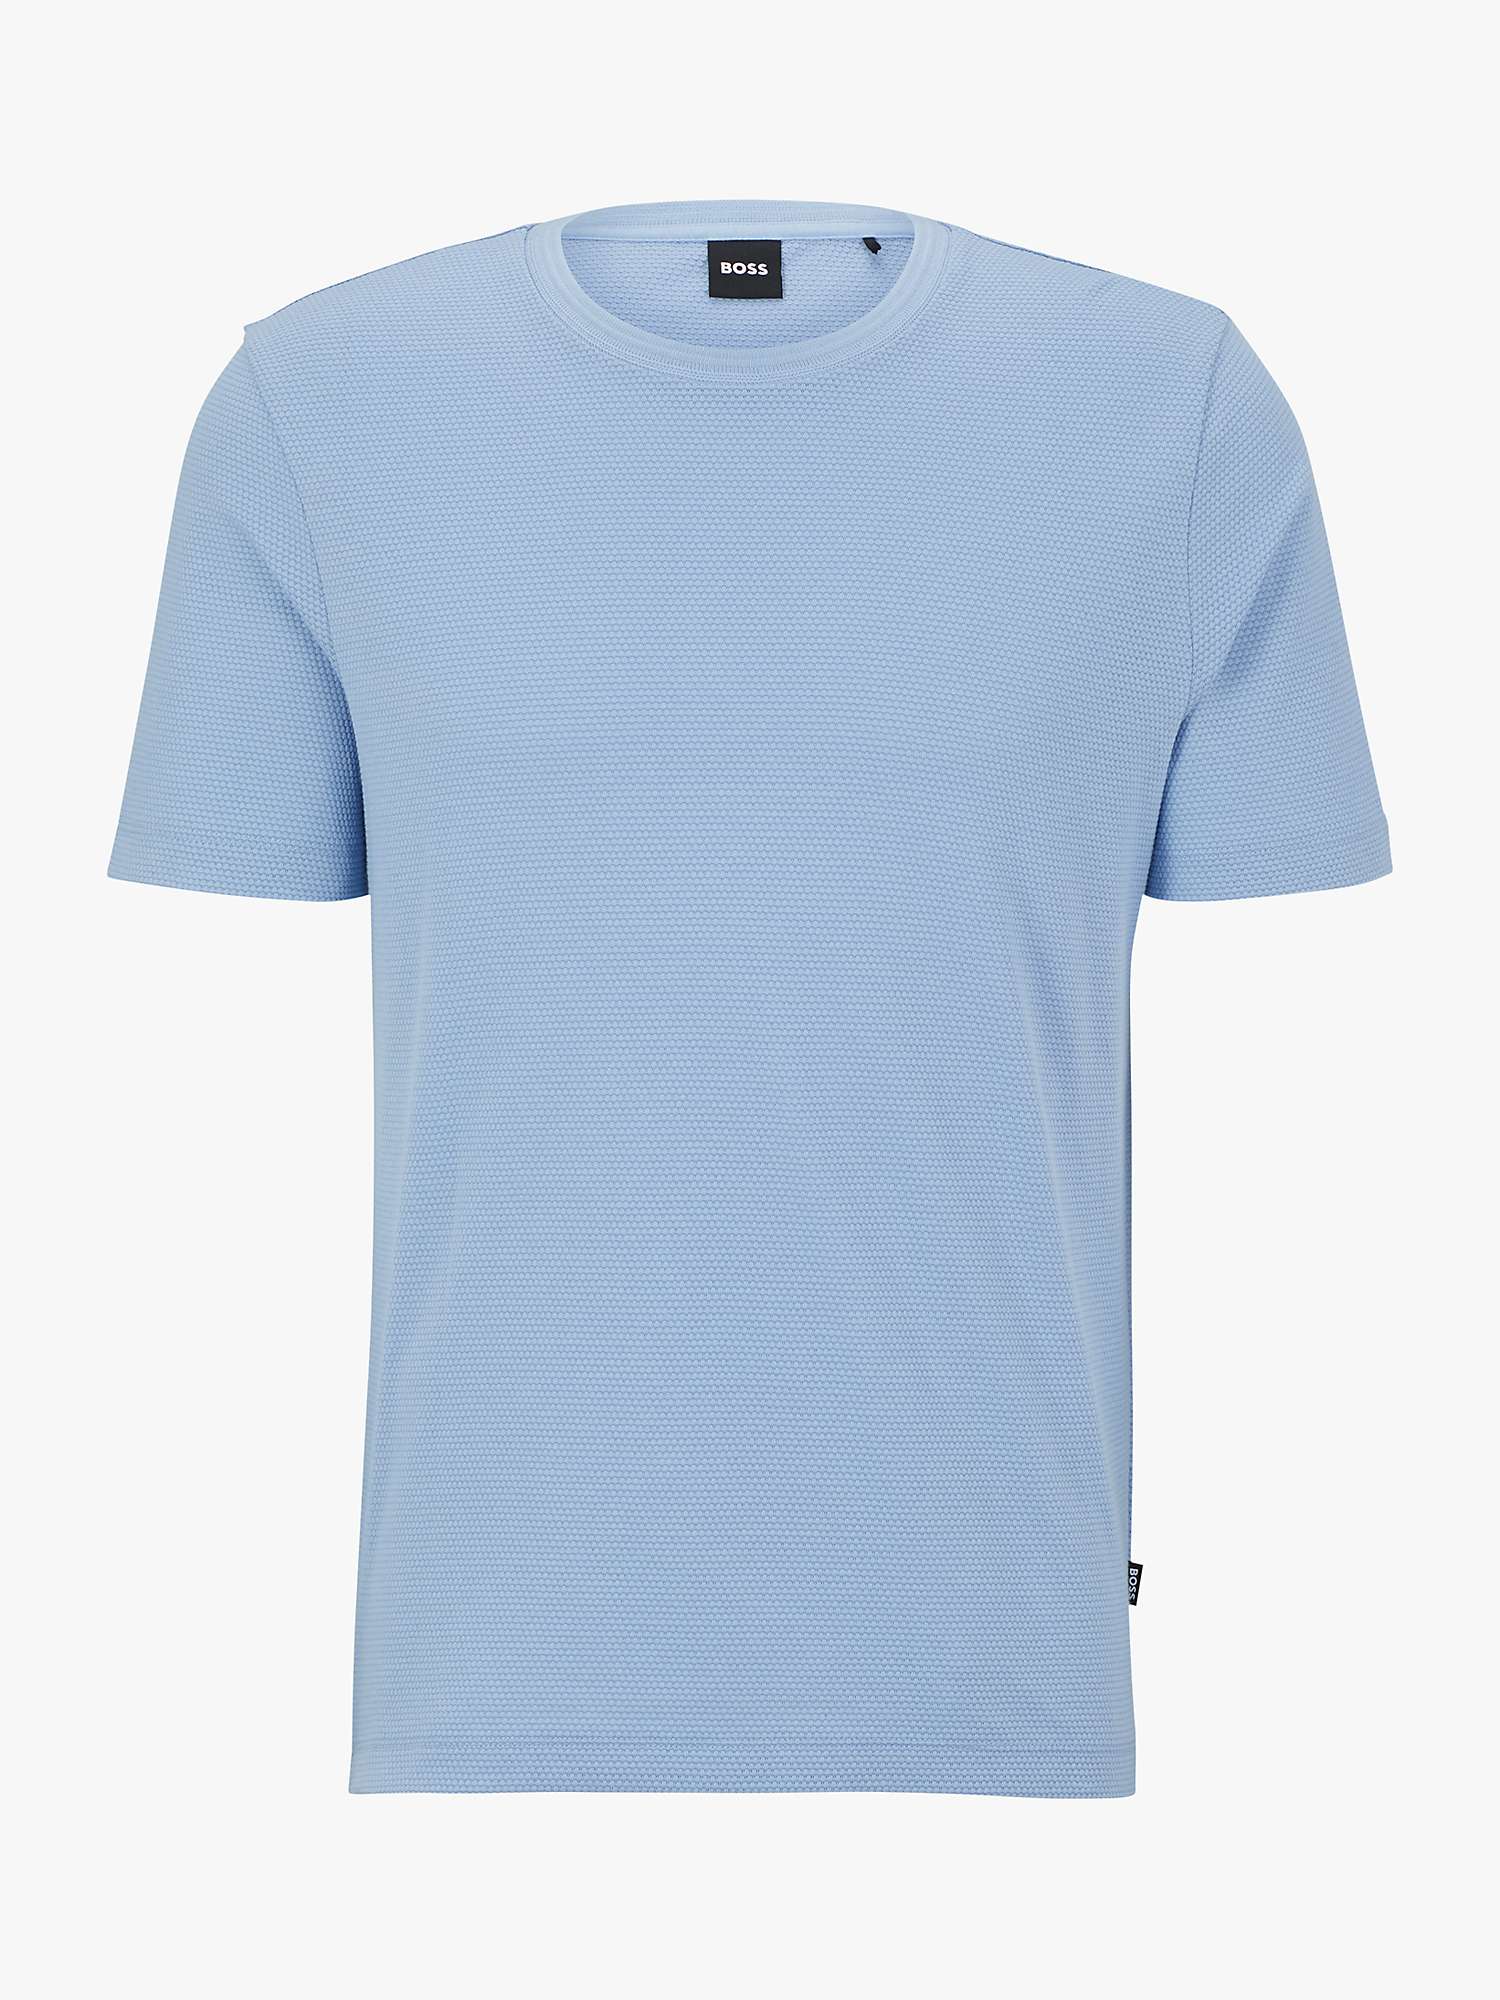 BOSS Tiburt Textured T-Shirt, Open Blue at John Lewis & Partners